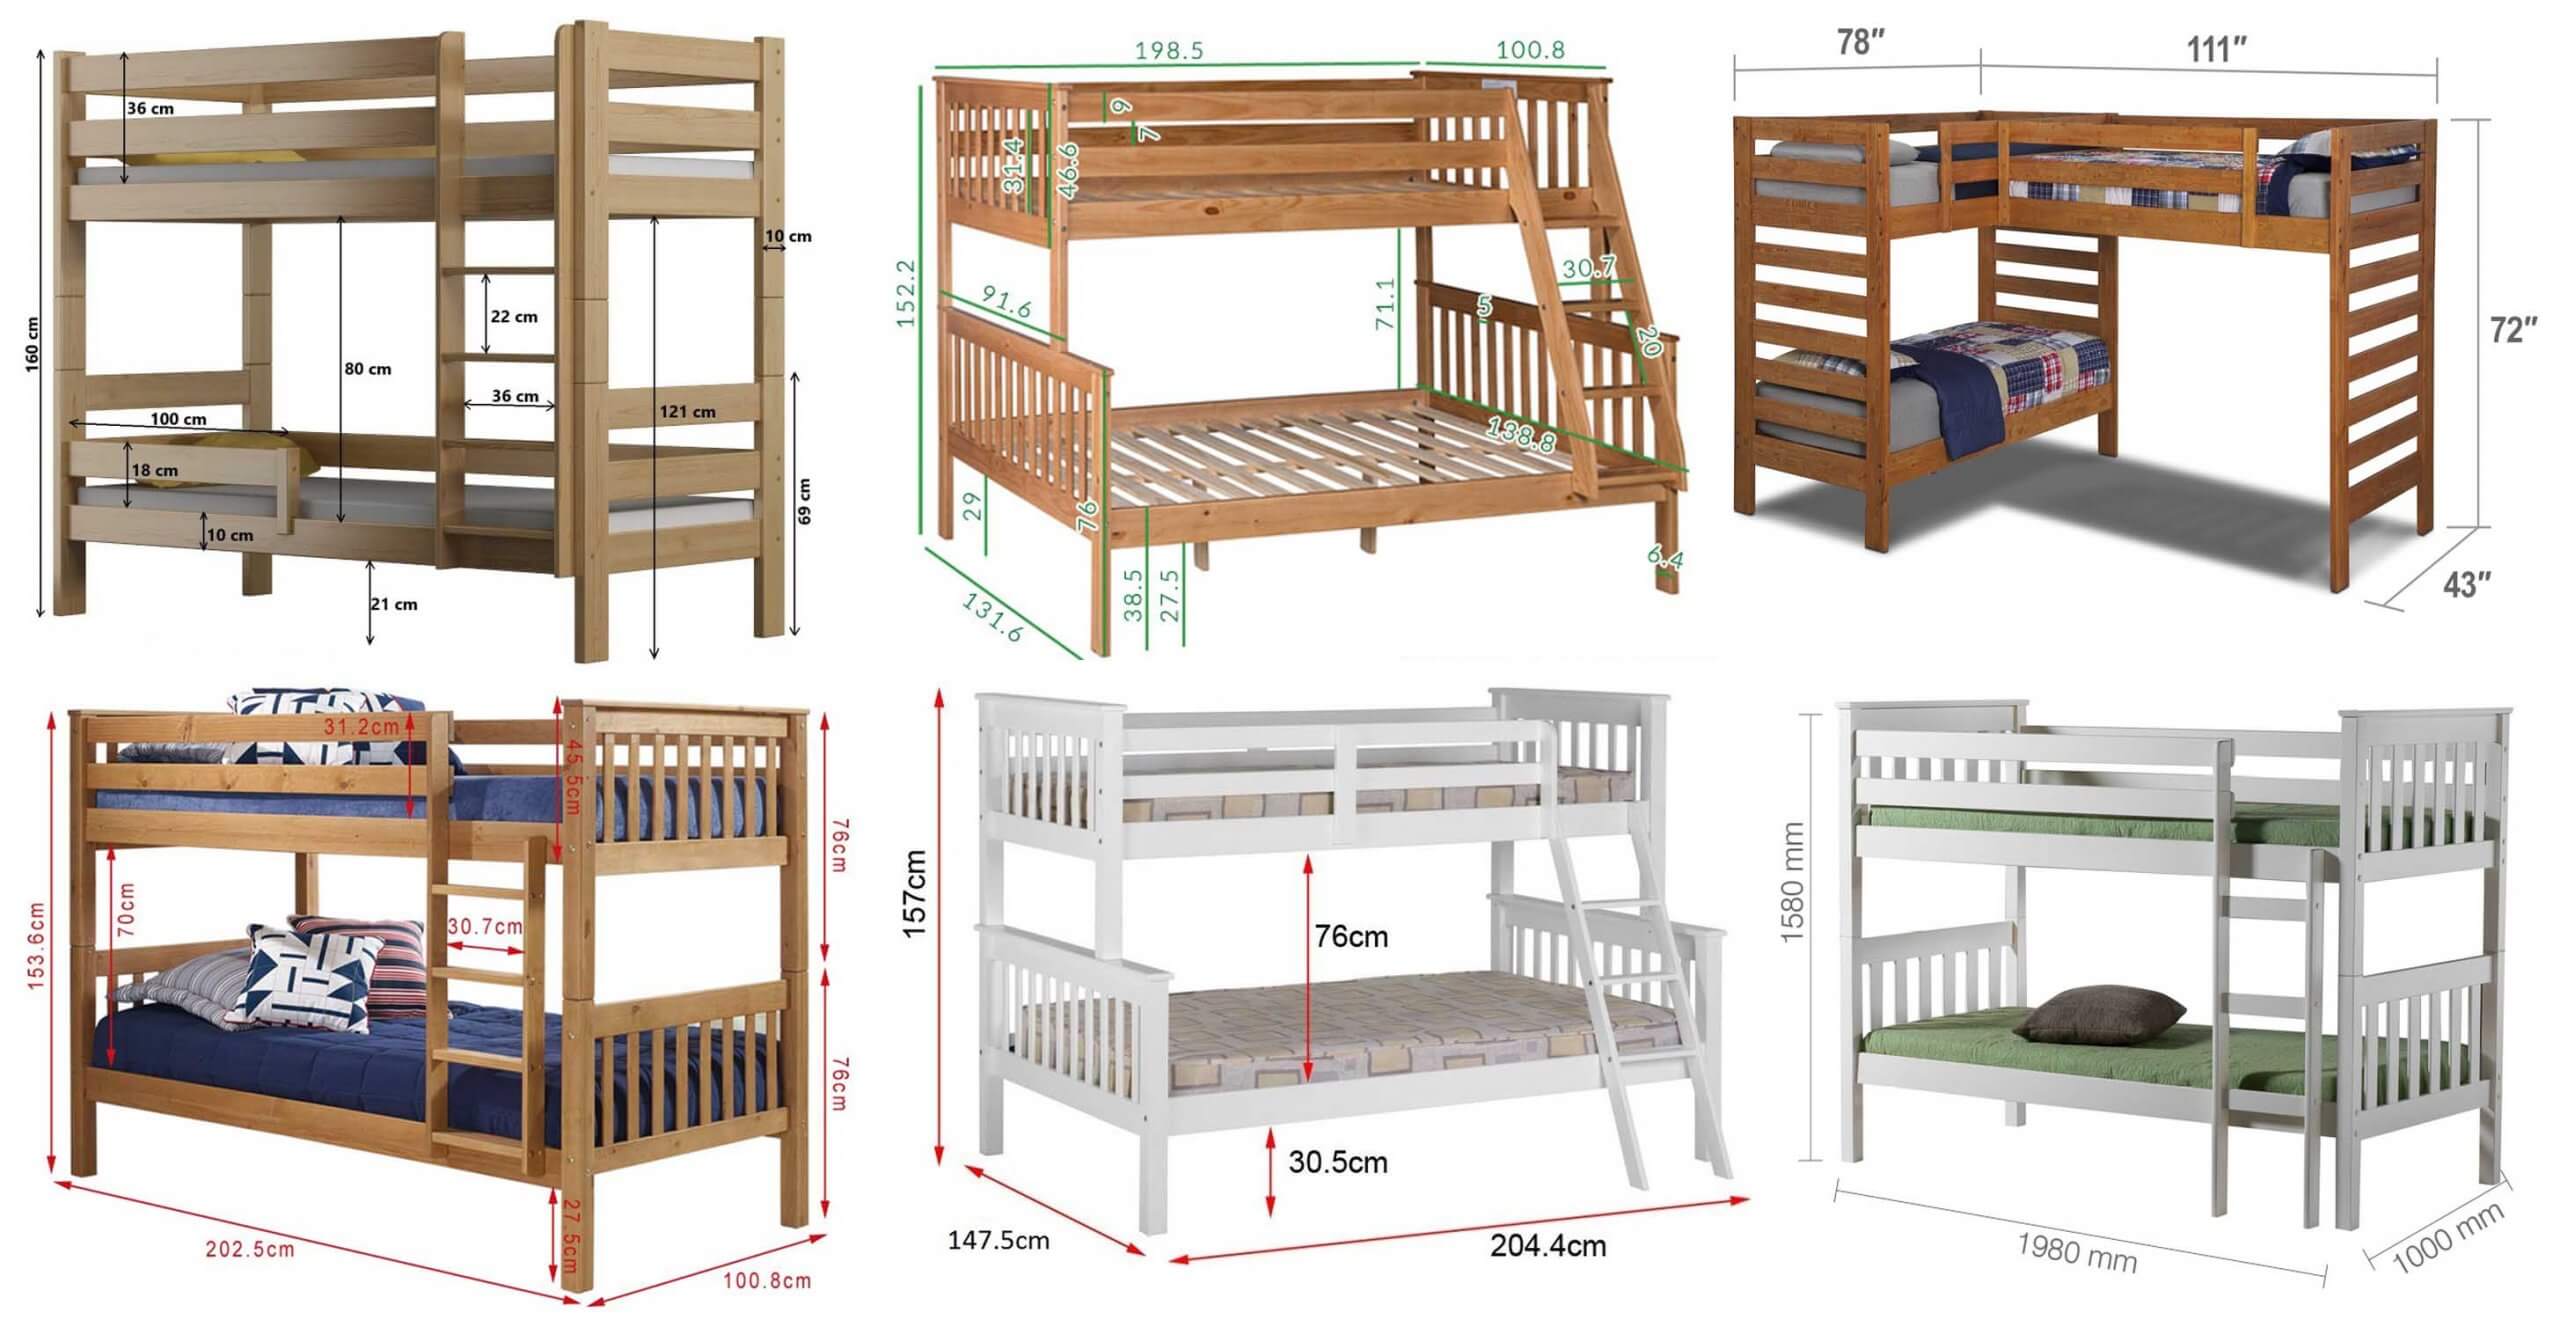 standard size mattress for bunk beds